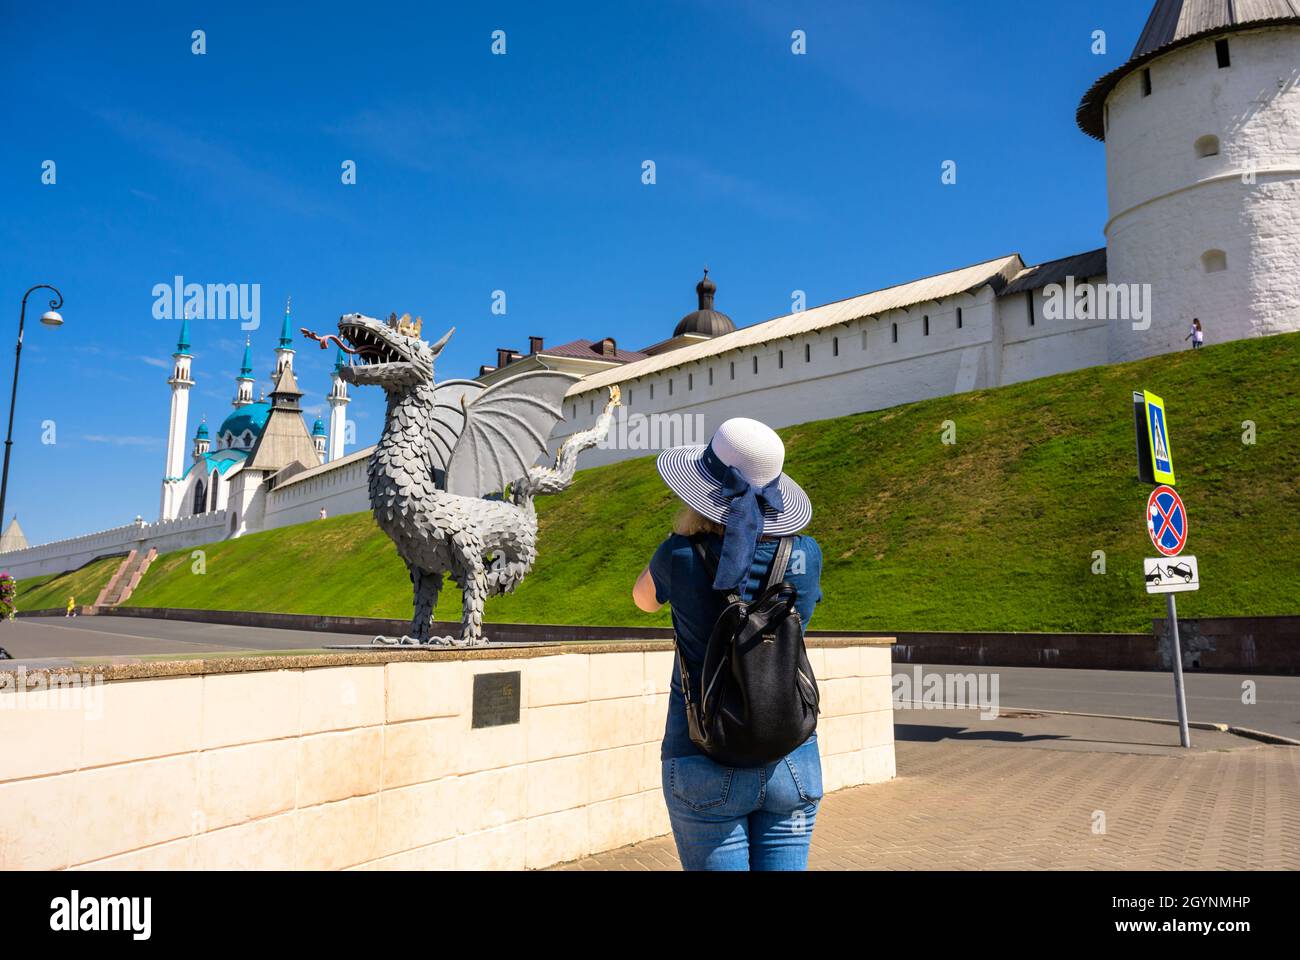 Kasan, Russland - 16. Juni 2021: Junge Frau fotografiert die Drachenstatue im Kasan Kreml, Tatarstan, Russland. Der Kreml ist die wichtigste Touristenattraktion von Ka Stockfoto